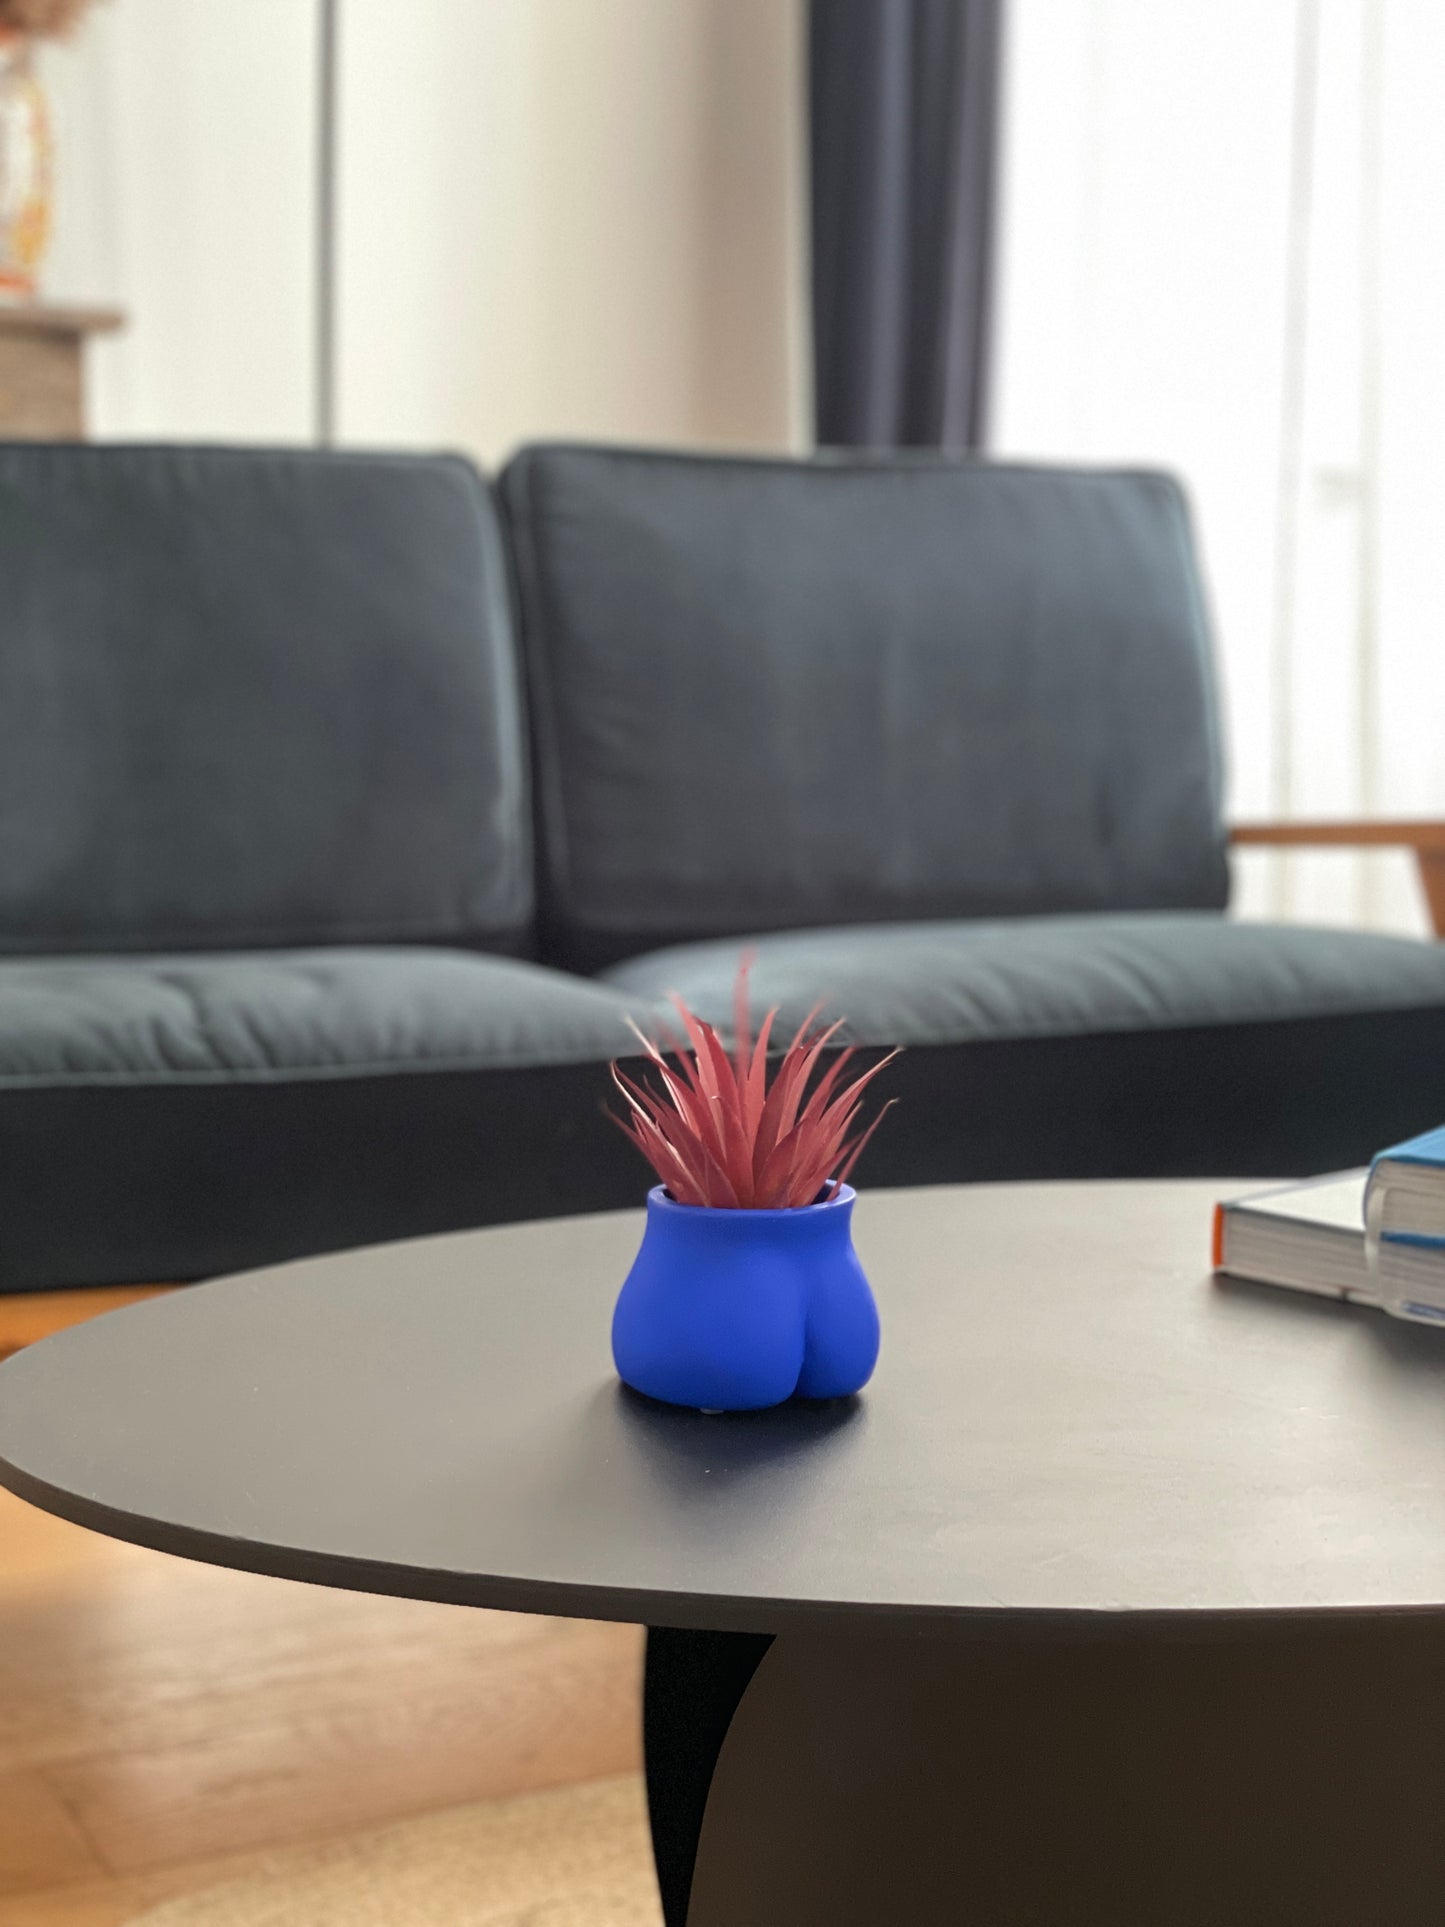 Le Mini Fessier Bleu Klein de Maison Tessier, sur une table basse dans un salon avec une petite plante